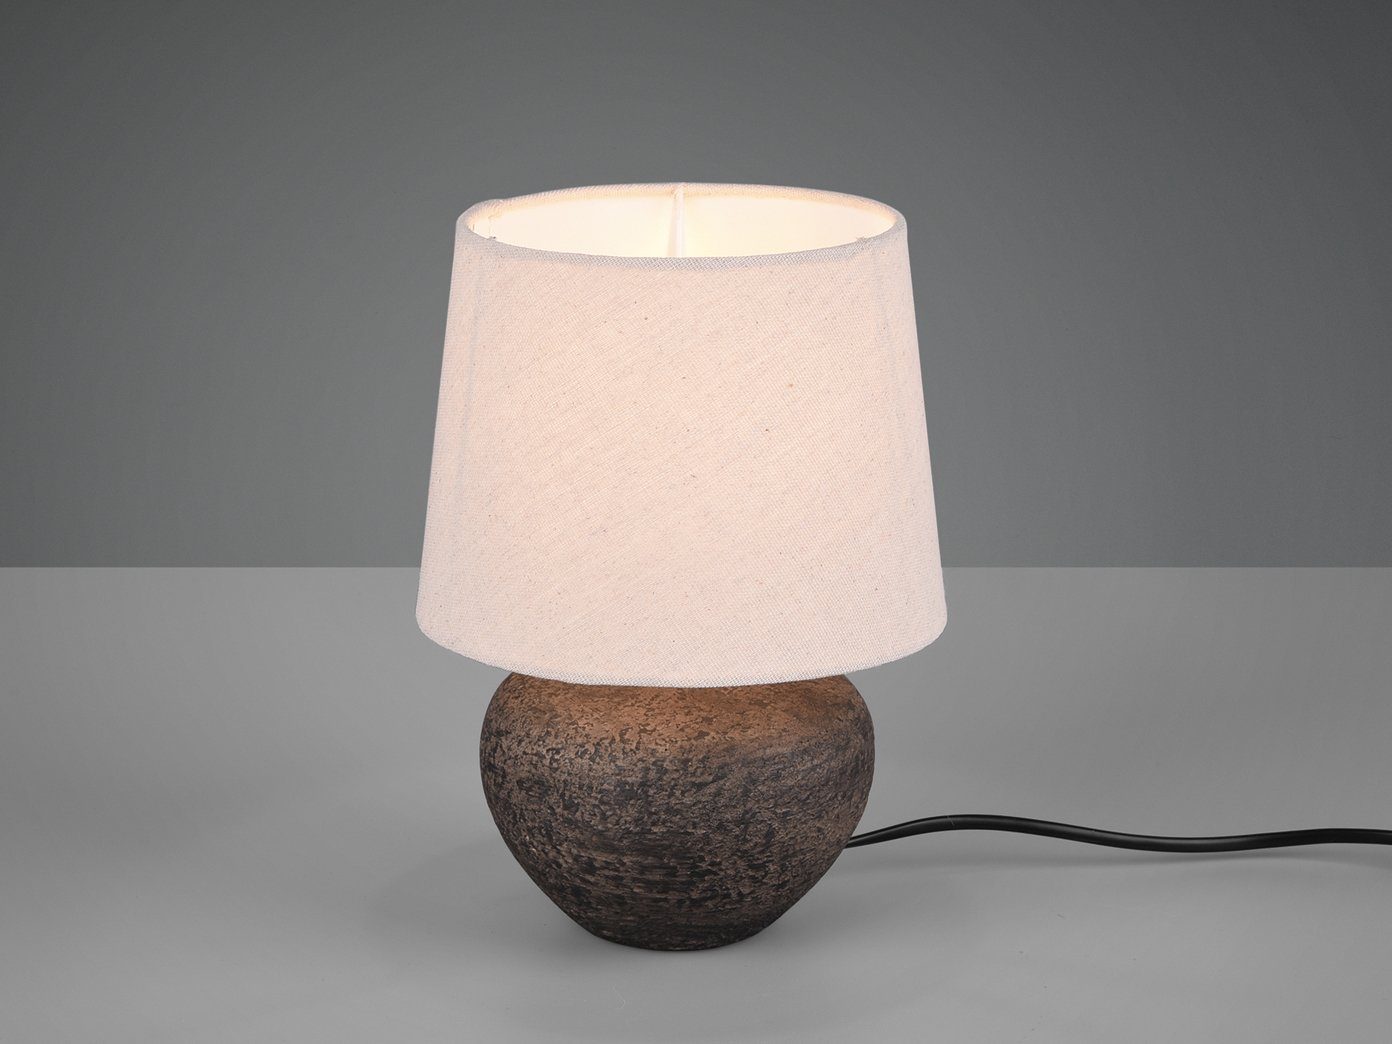 LED Textil Nacht Tisch Lampe grau Holz Lese Leuchte Wohn Zimmer Beleuchtung 